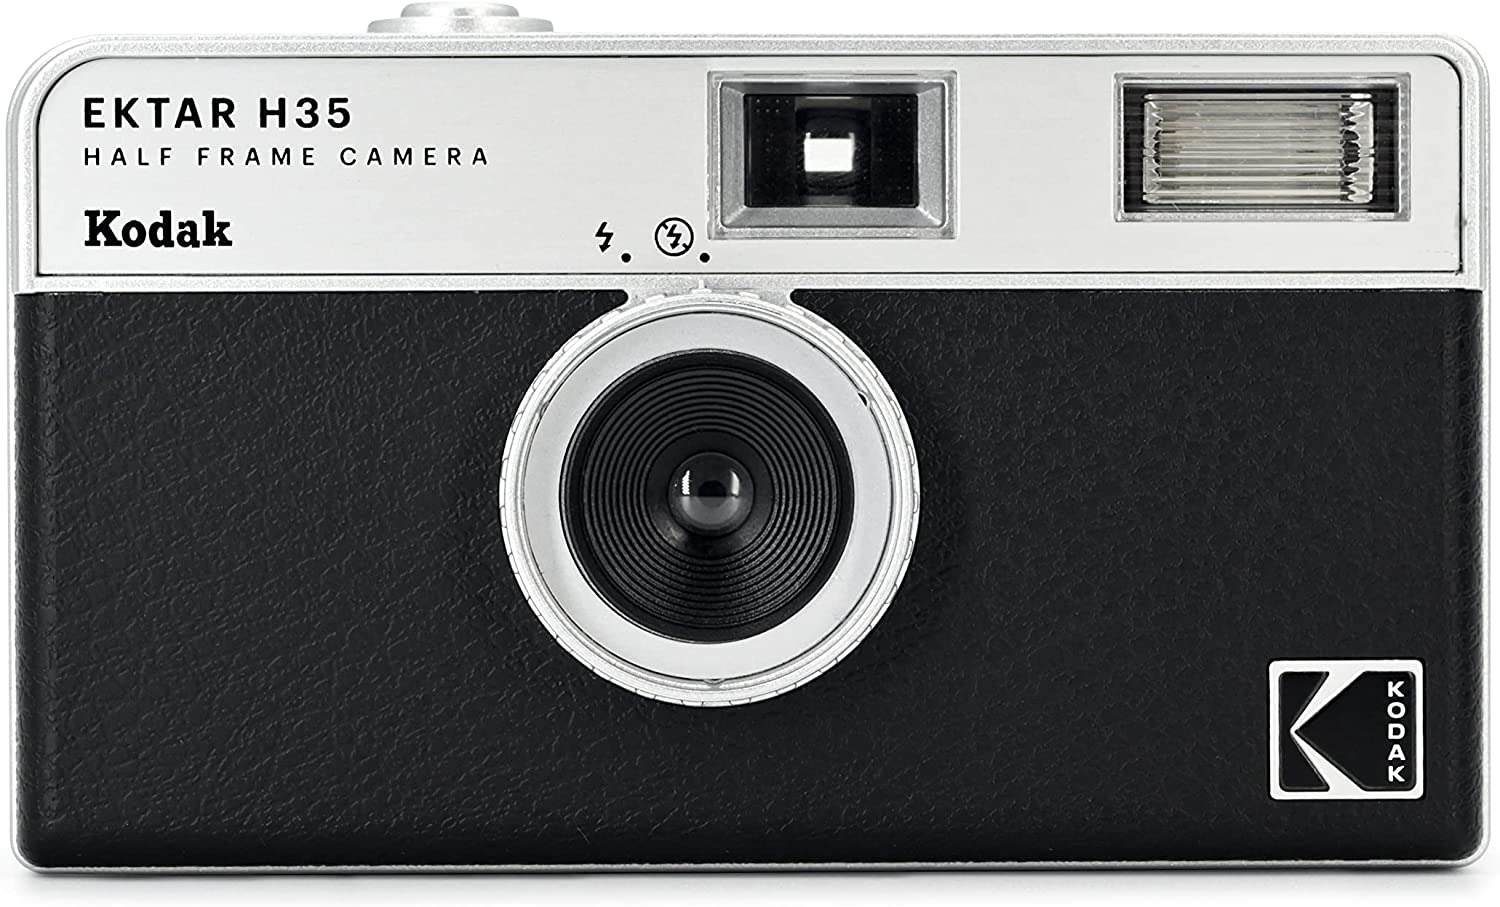 ネットワーク全体の最低価格に挑戦フィルムカメラ Kodak コダック ハーフカメラ フィルムカメラ フィルム枚数の倍撮れる レトロ 簡単 軽量 おすすめ コンパクト オススメ 初心者 35mm カメラ EKTAR H35 ブラック